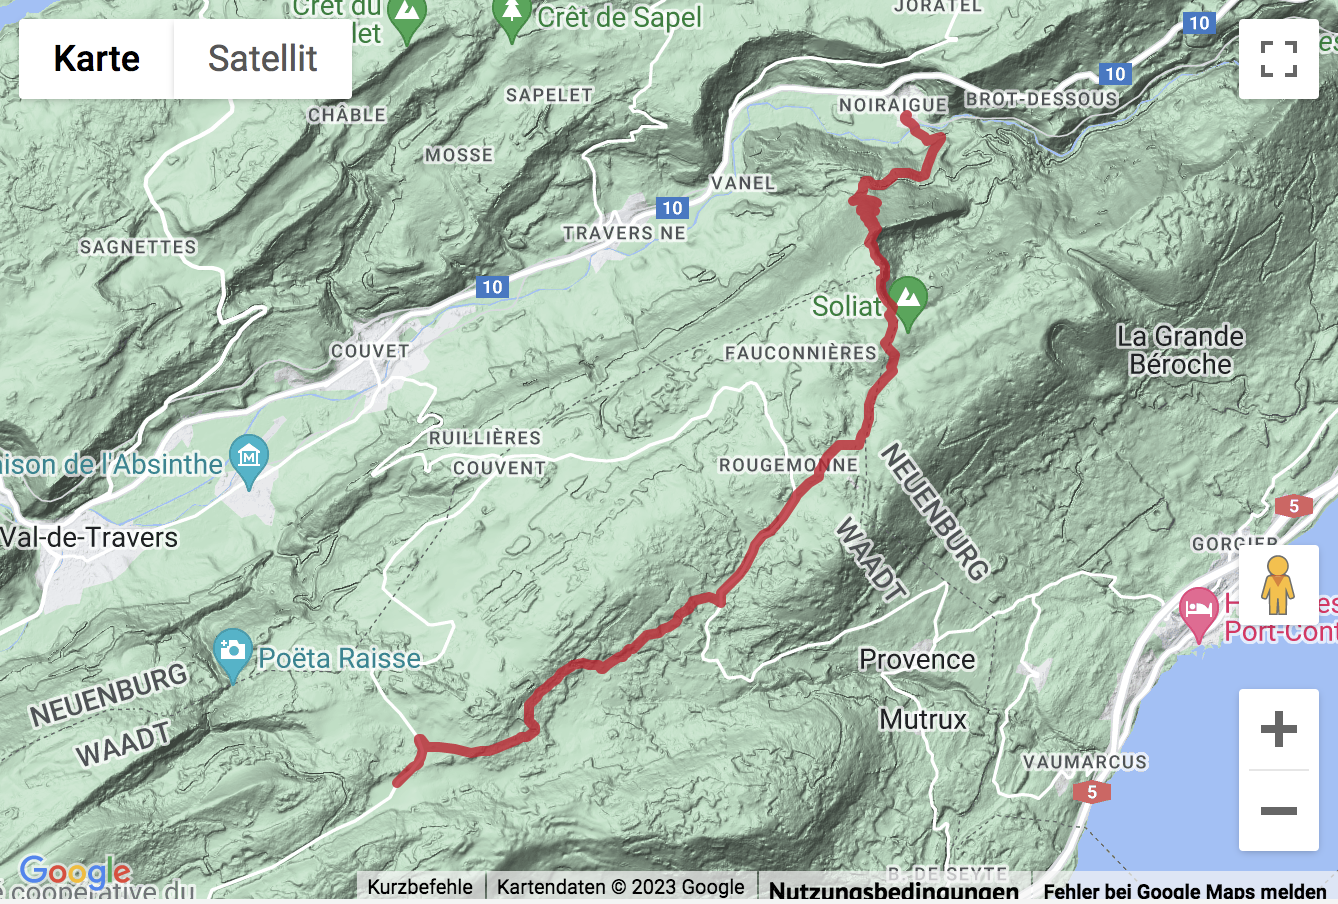 Übersichts-Routenkarte für die Wanderung auf dem Jura-Höhenweg zum Creux du Van